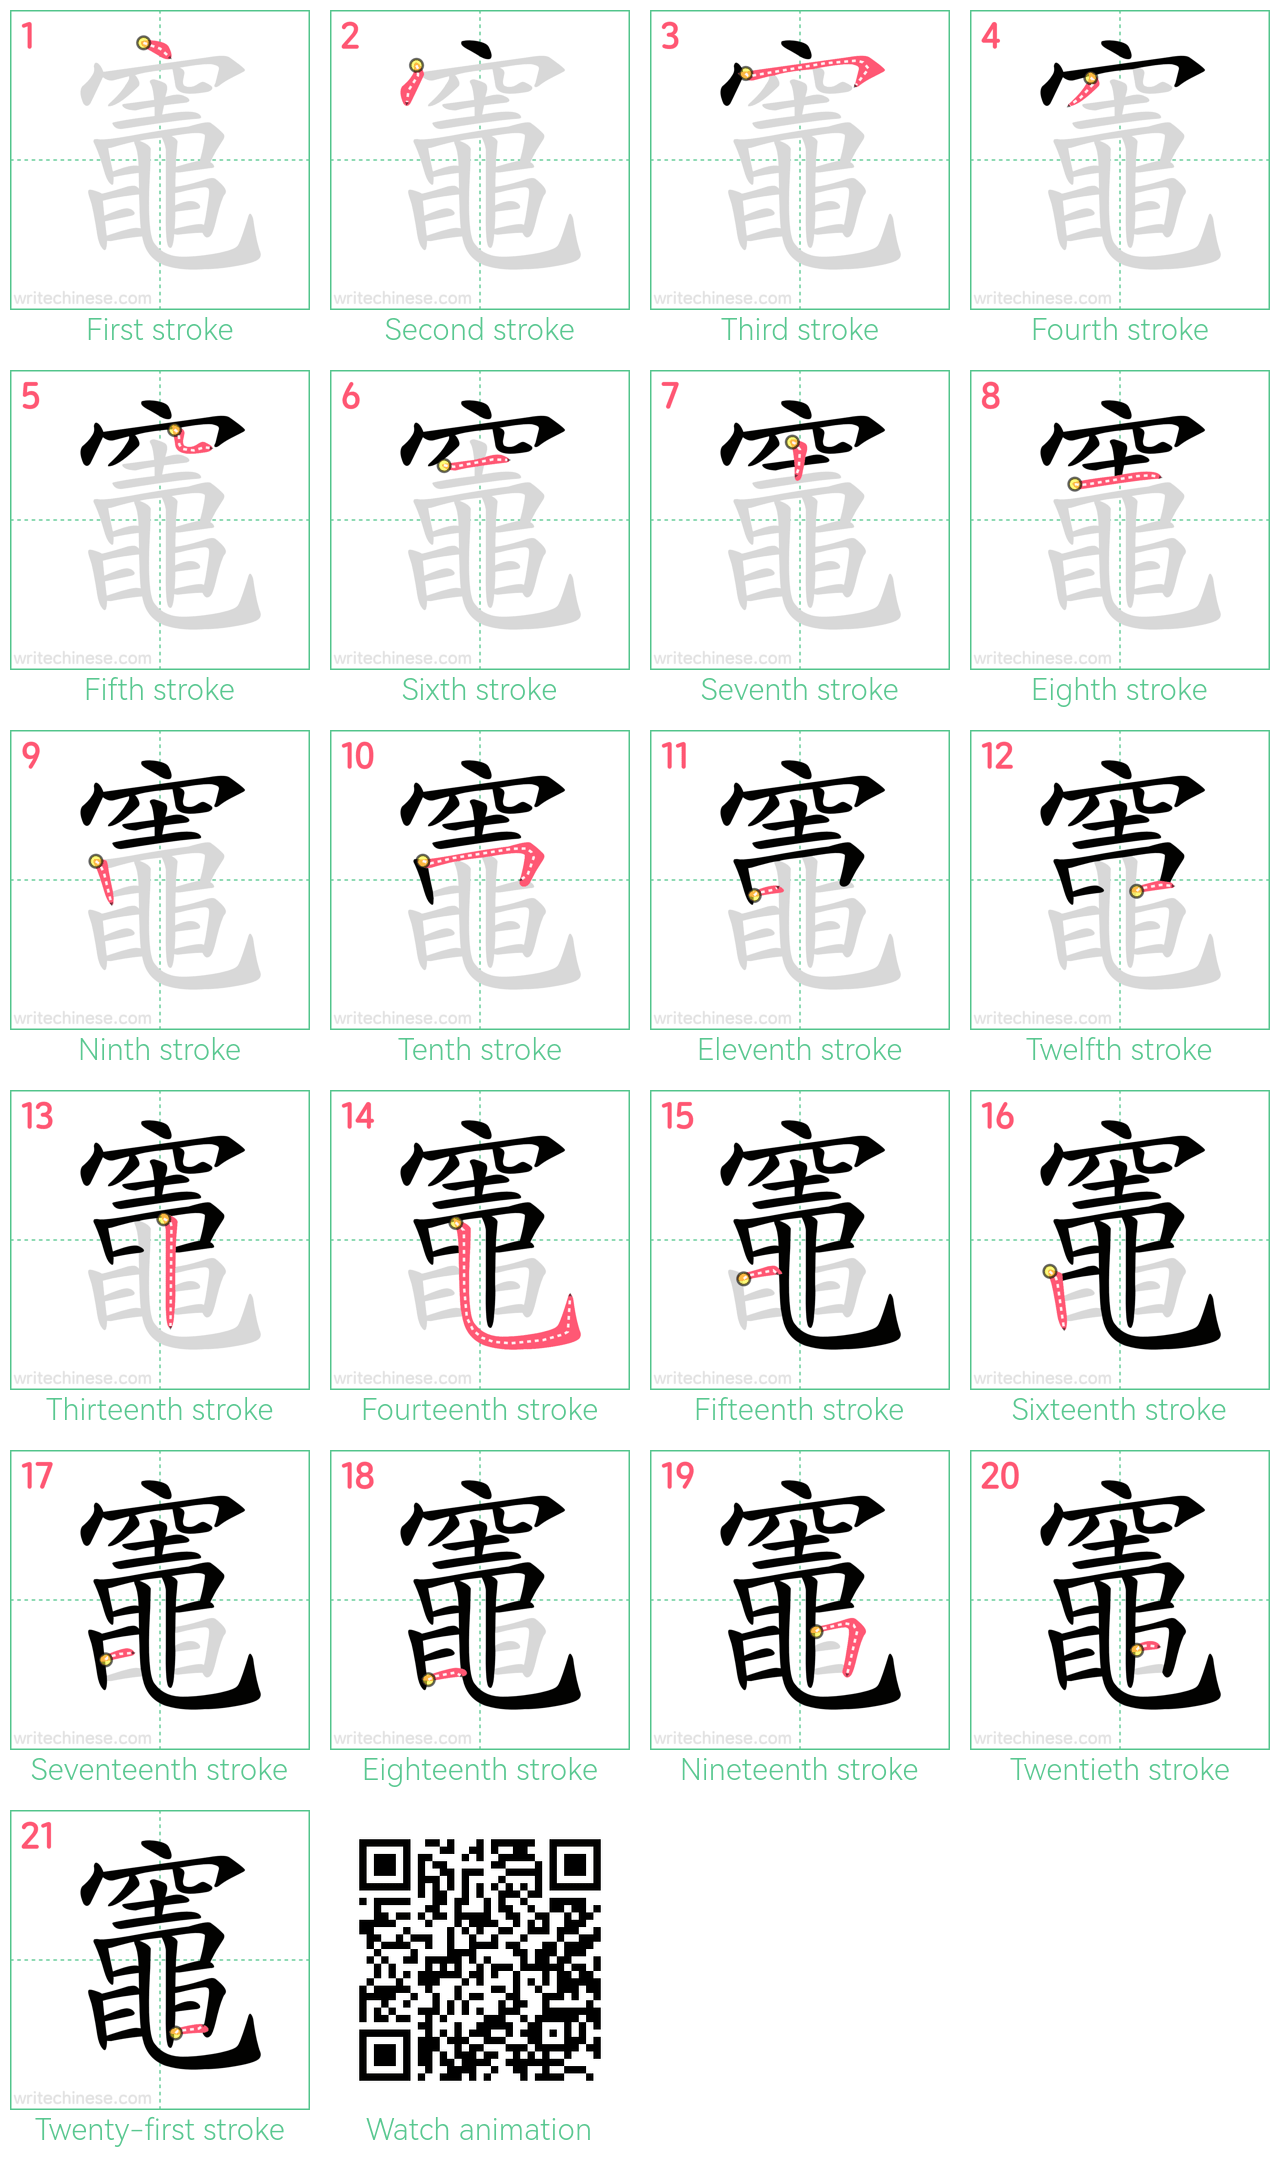 竈 step-by-step stroke order diagrams